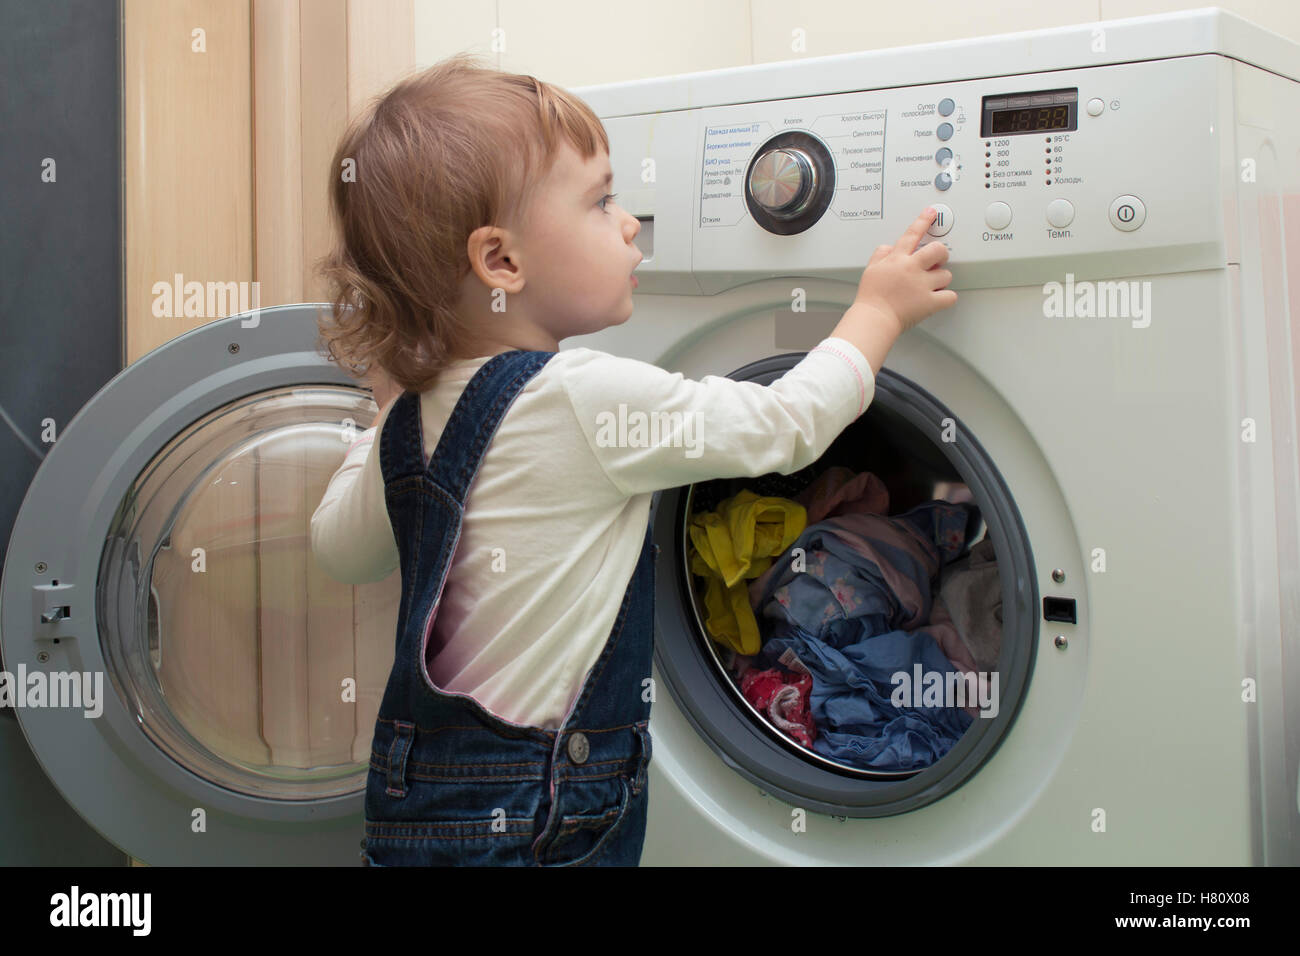 Das kleine Kind beginnt Waschmaschine. Mutters Helfer. 2 Jahre alt  Stockfotografie - Alamy